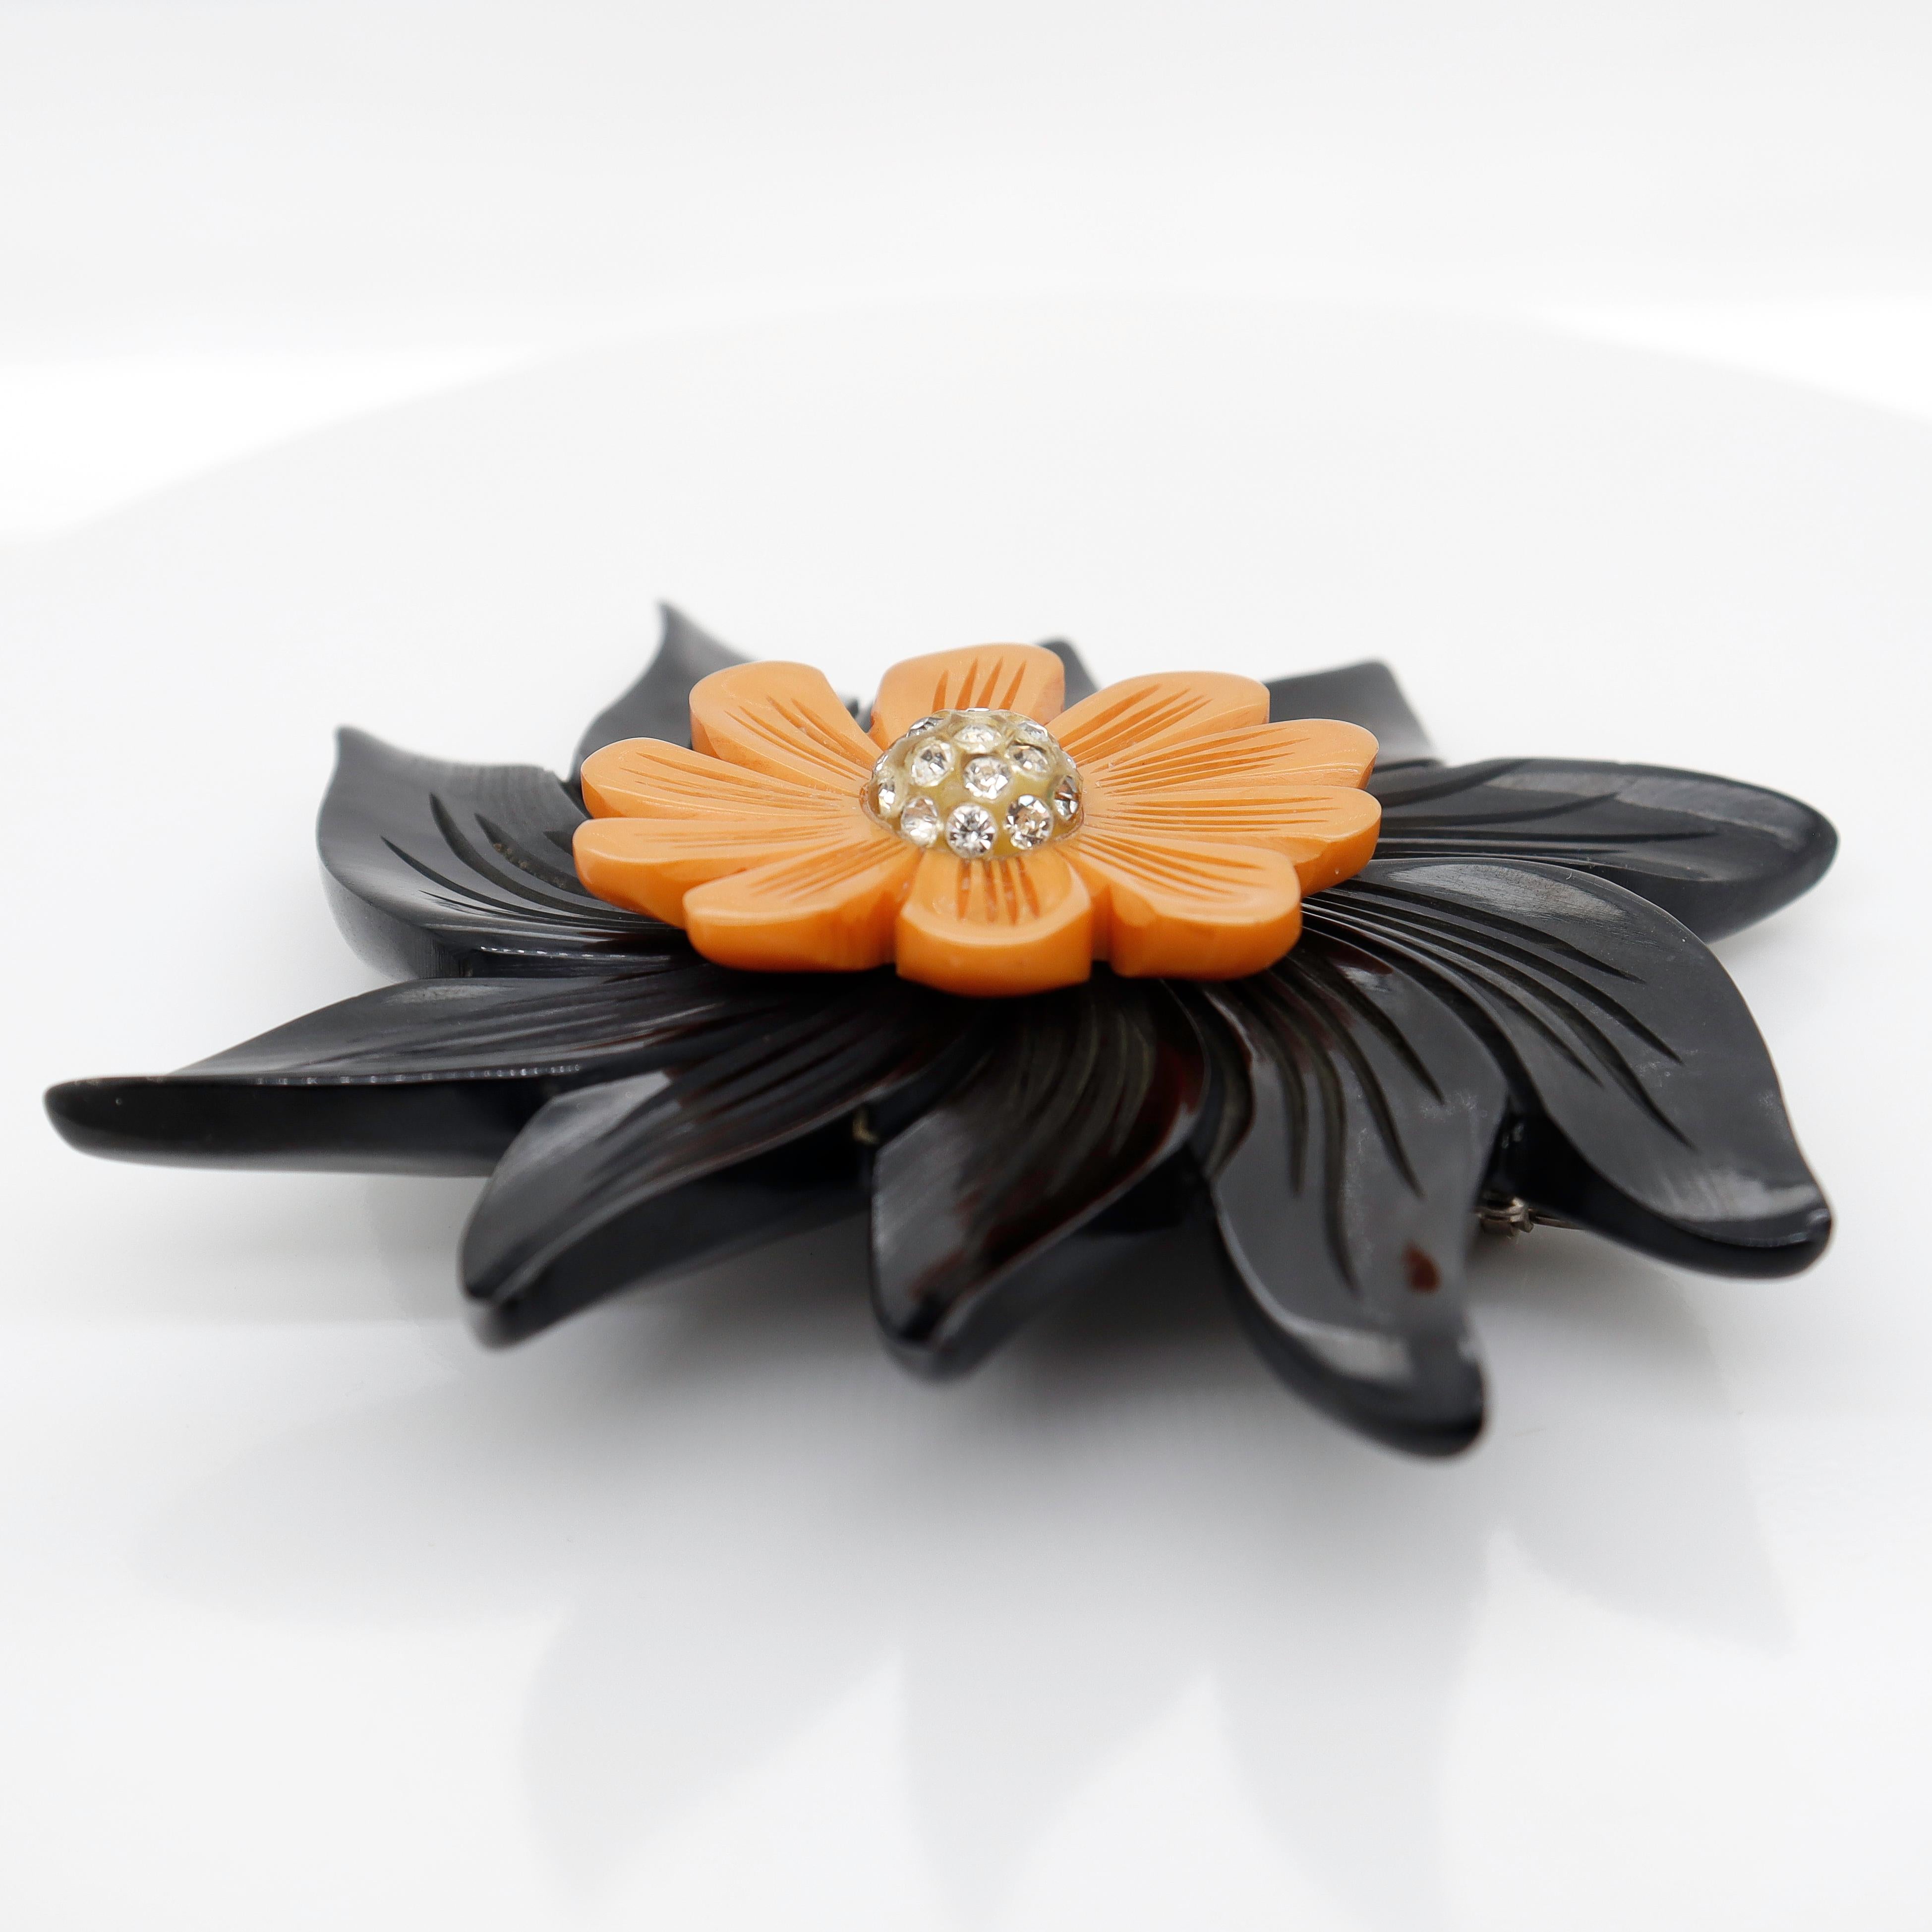 Art Deco 2-Color Black & Orange Bakelite Flower Brooch or Pin with Rhinestones